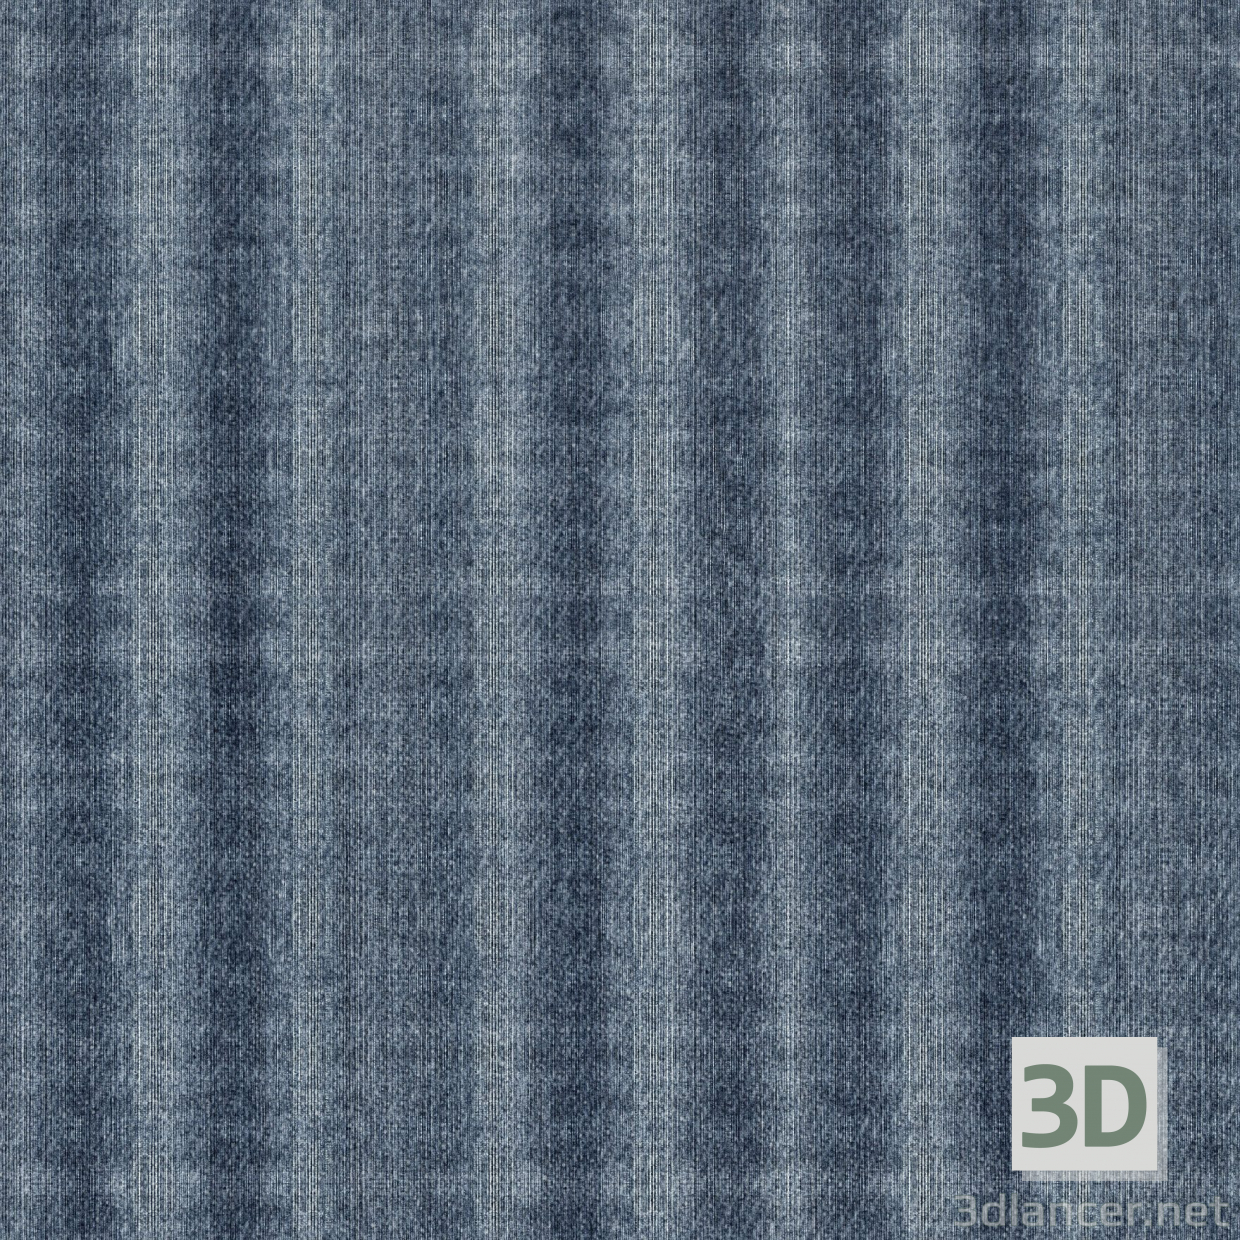 Texture download gratuito di lana - immagine